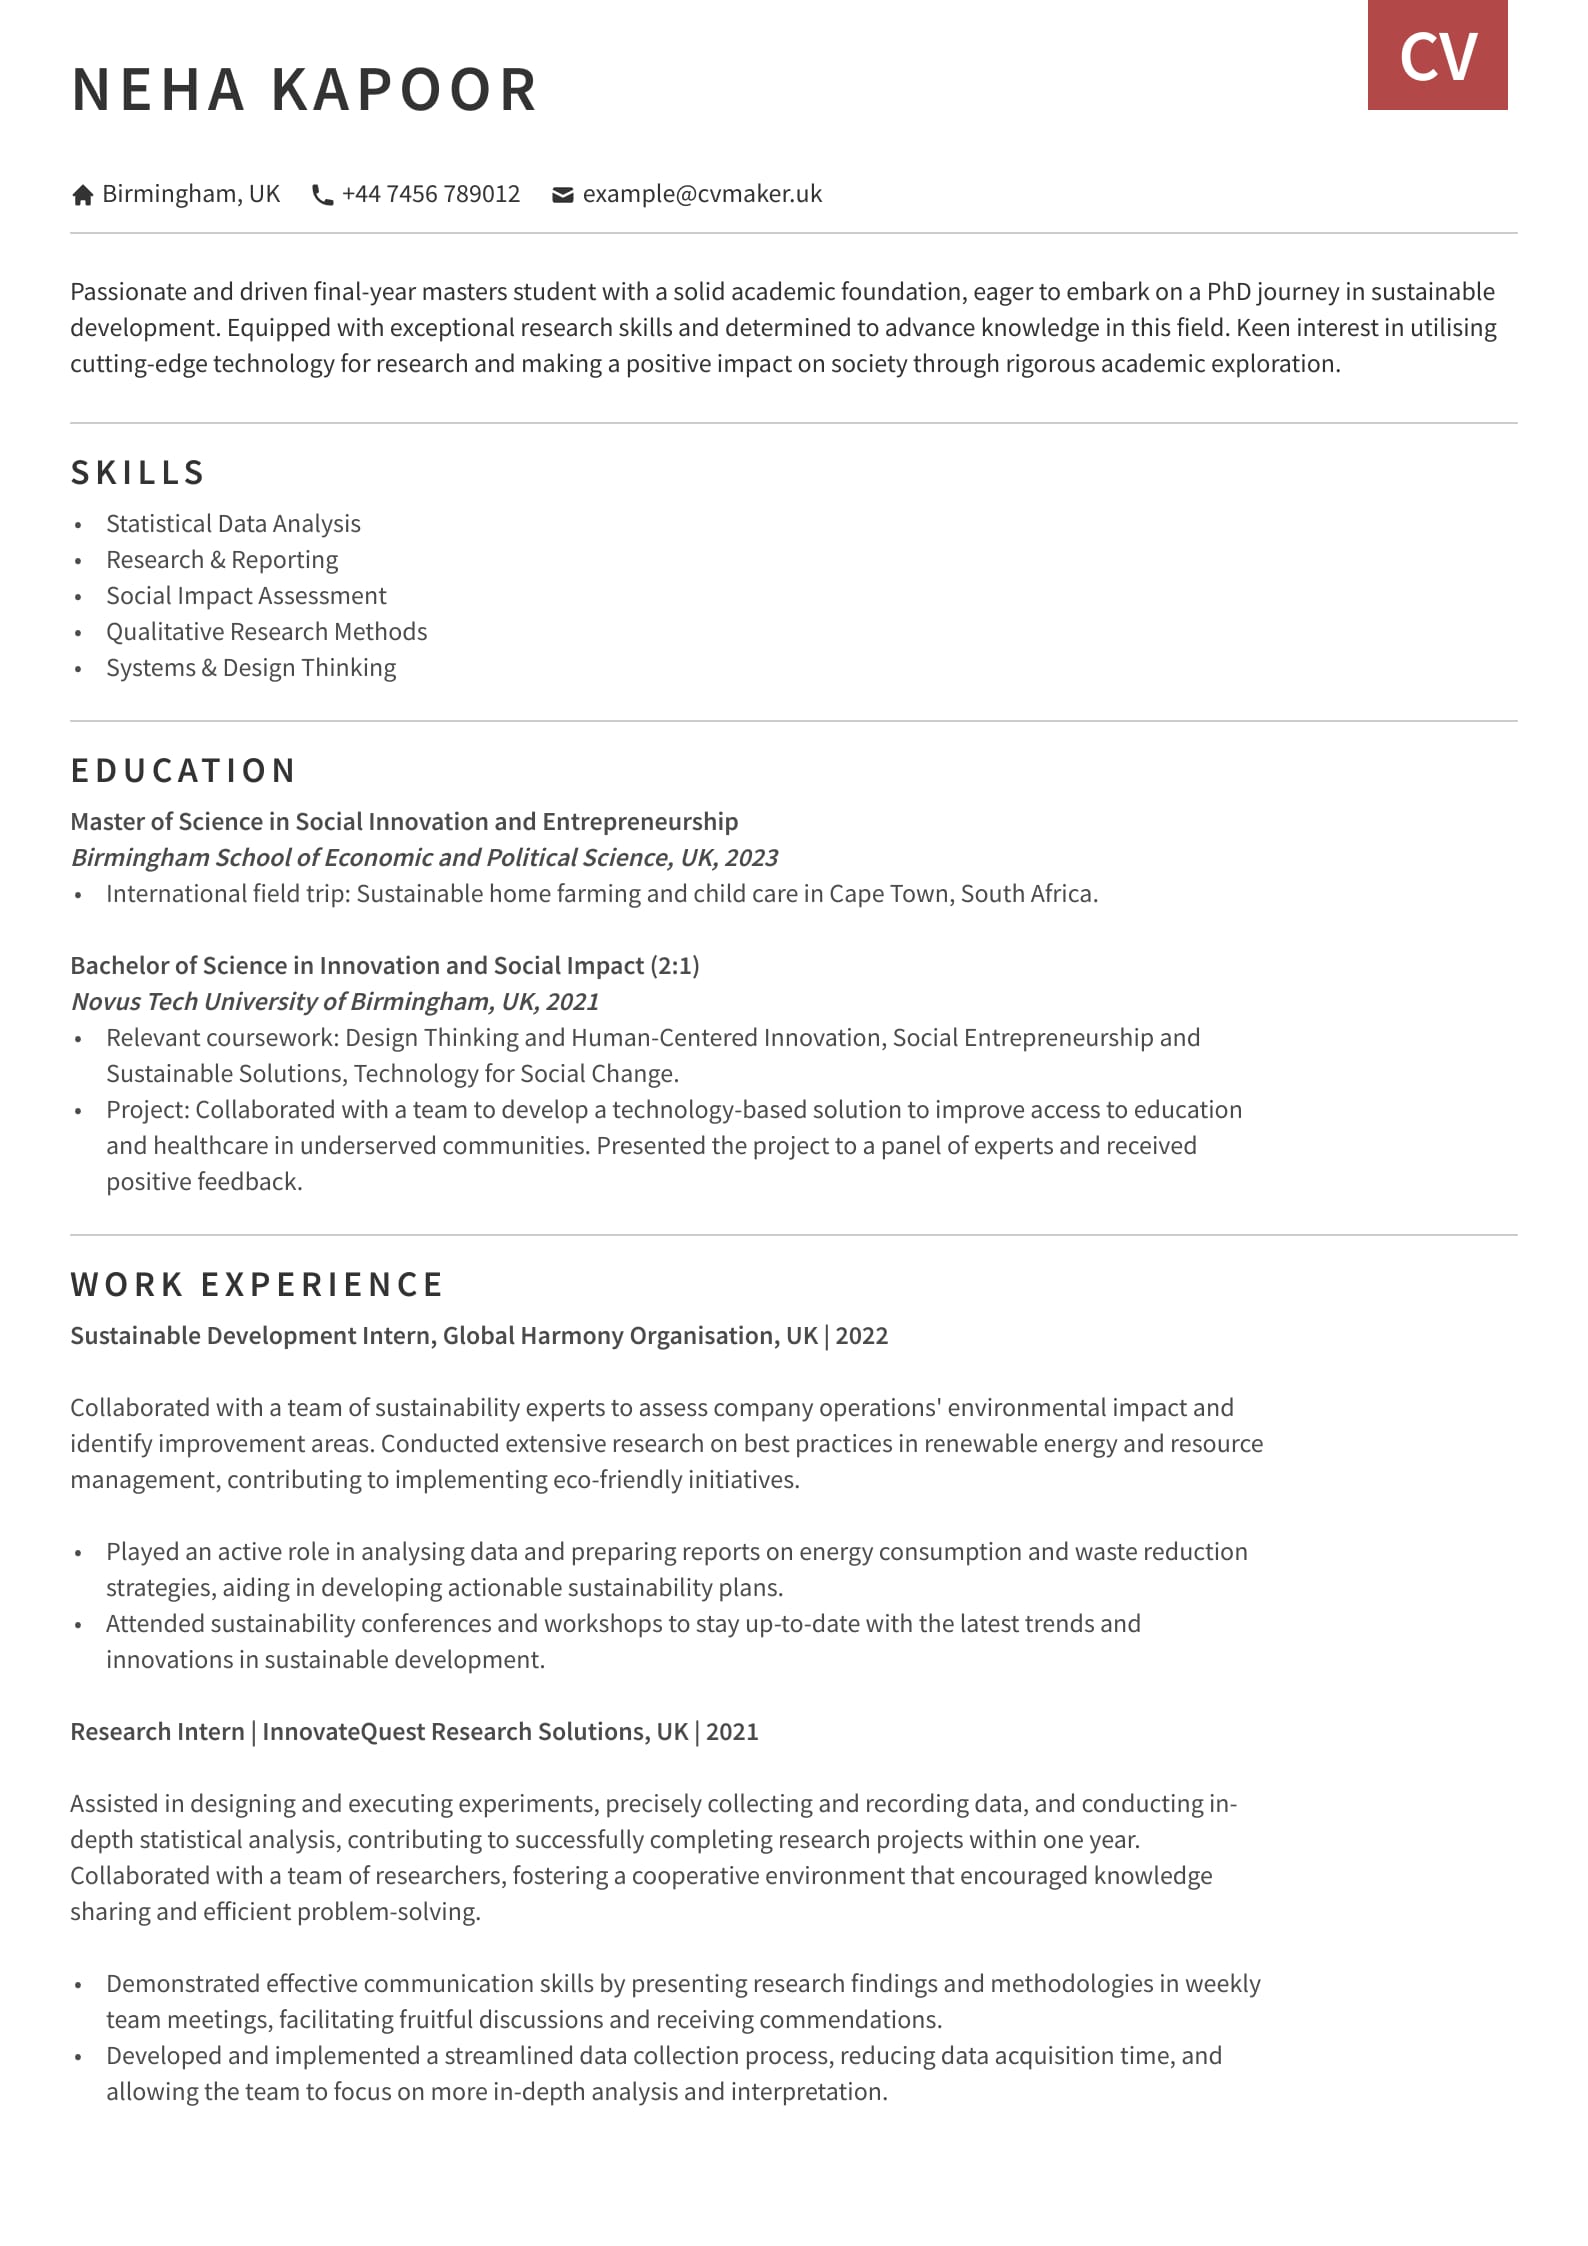 CV example - PhD - Otago template